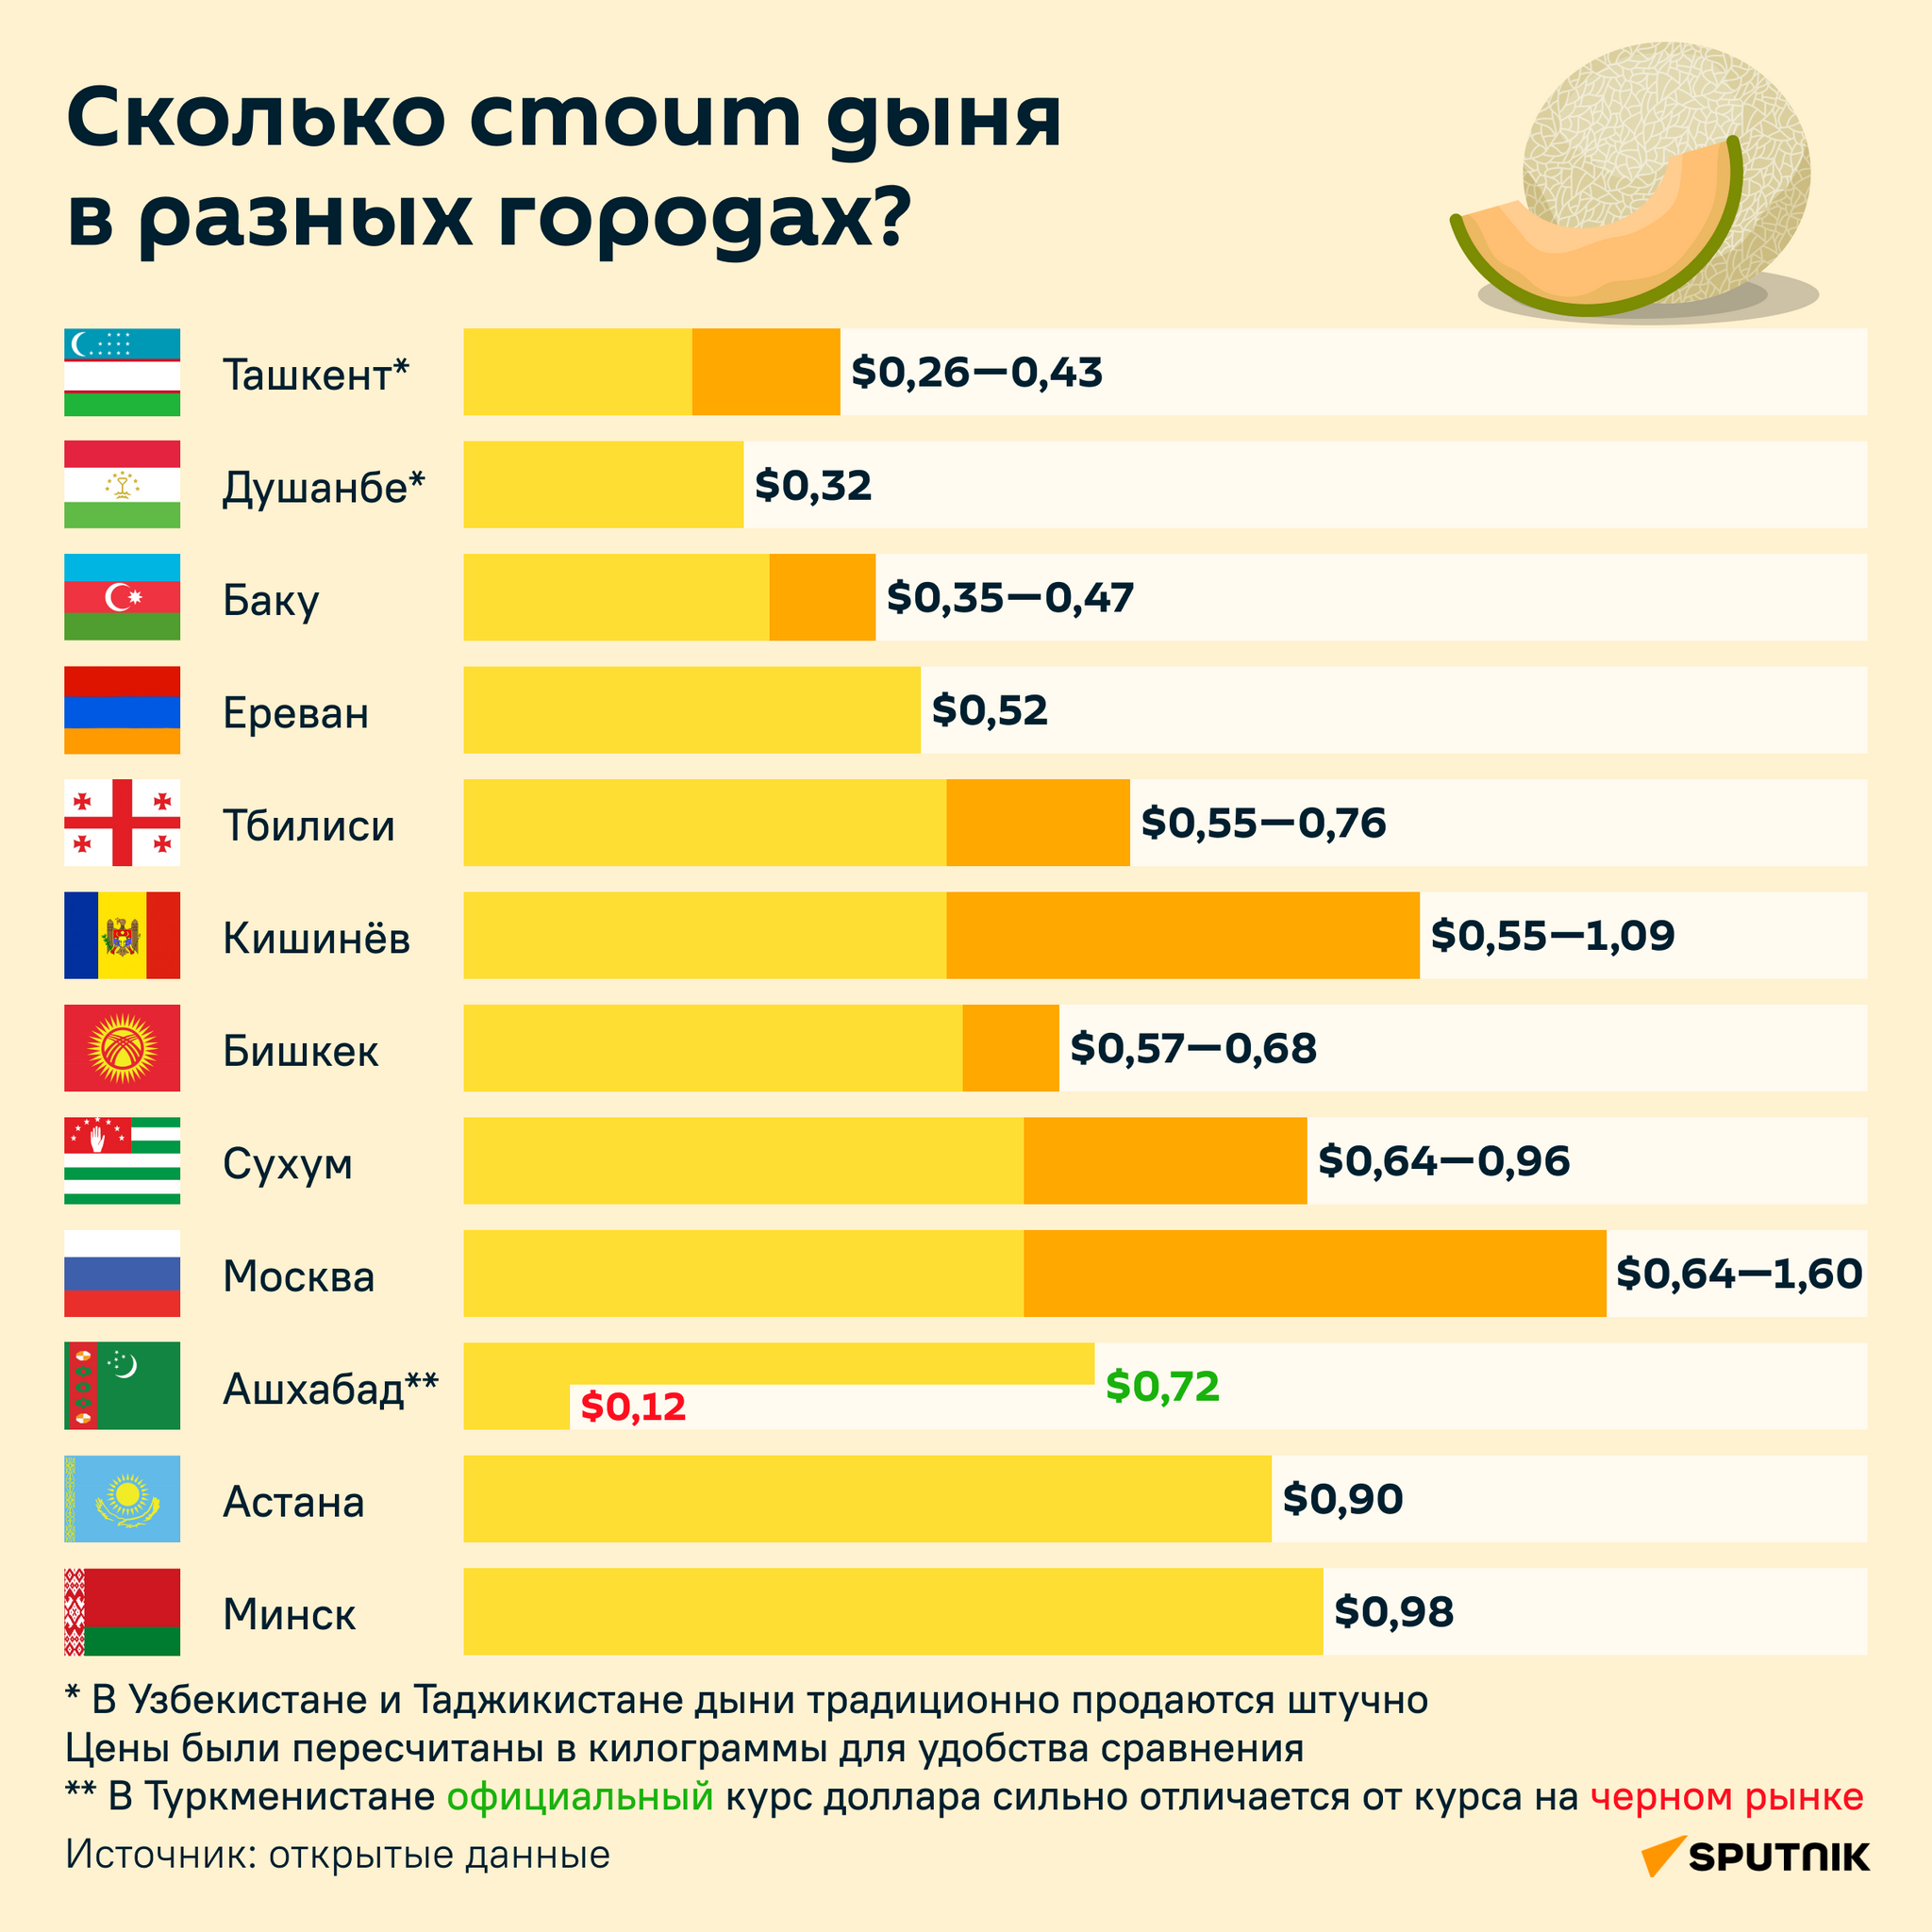 Сколько стоит дыня в разных городах инфографика - Sputnik Узбекистан